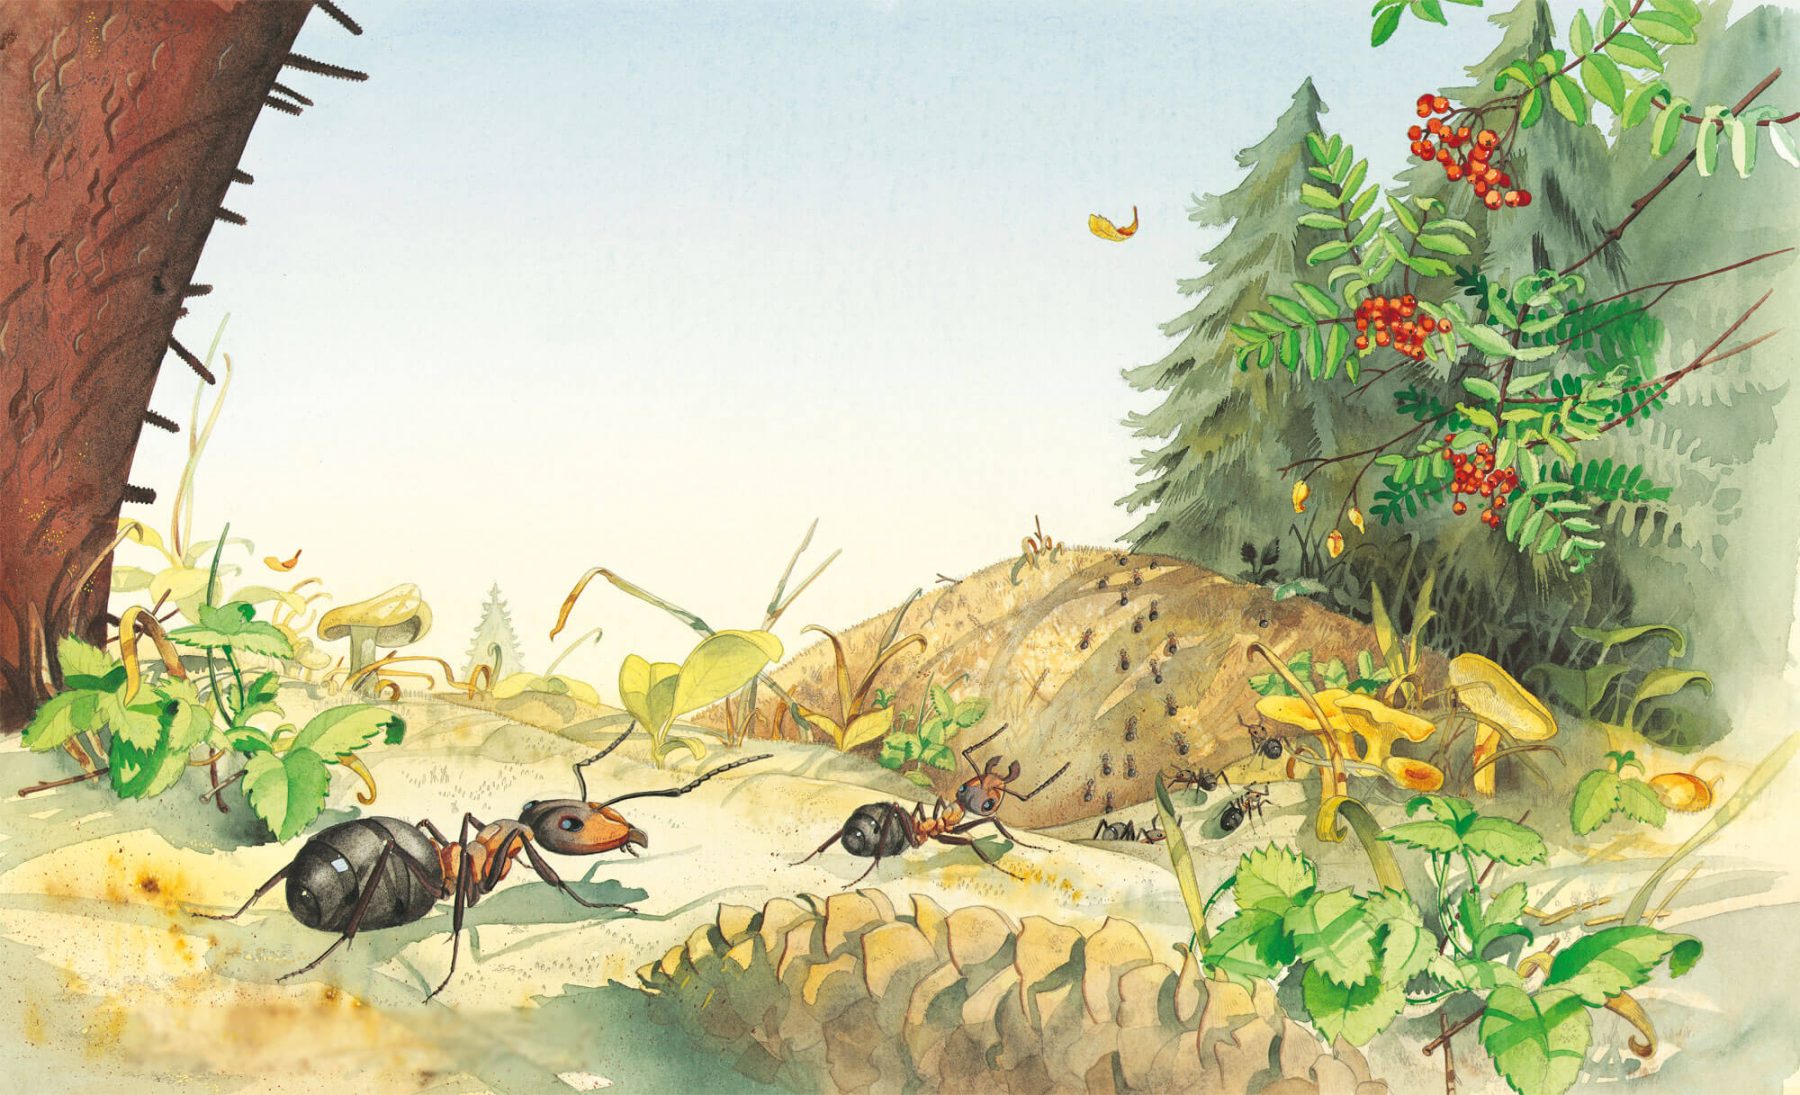 Les p'tites fourmis : la vie dans la fourmilière